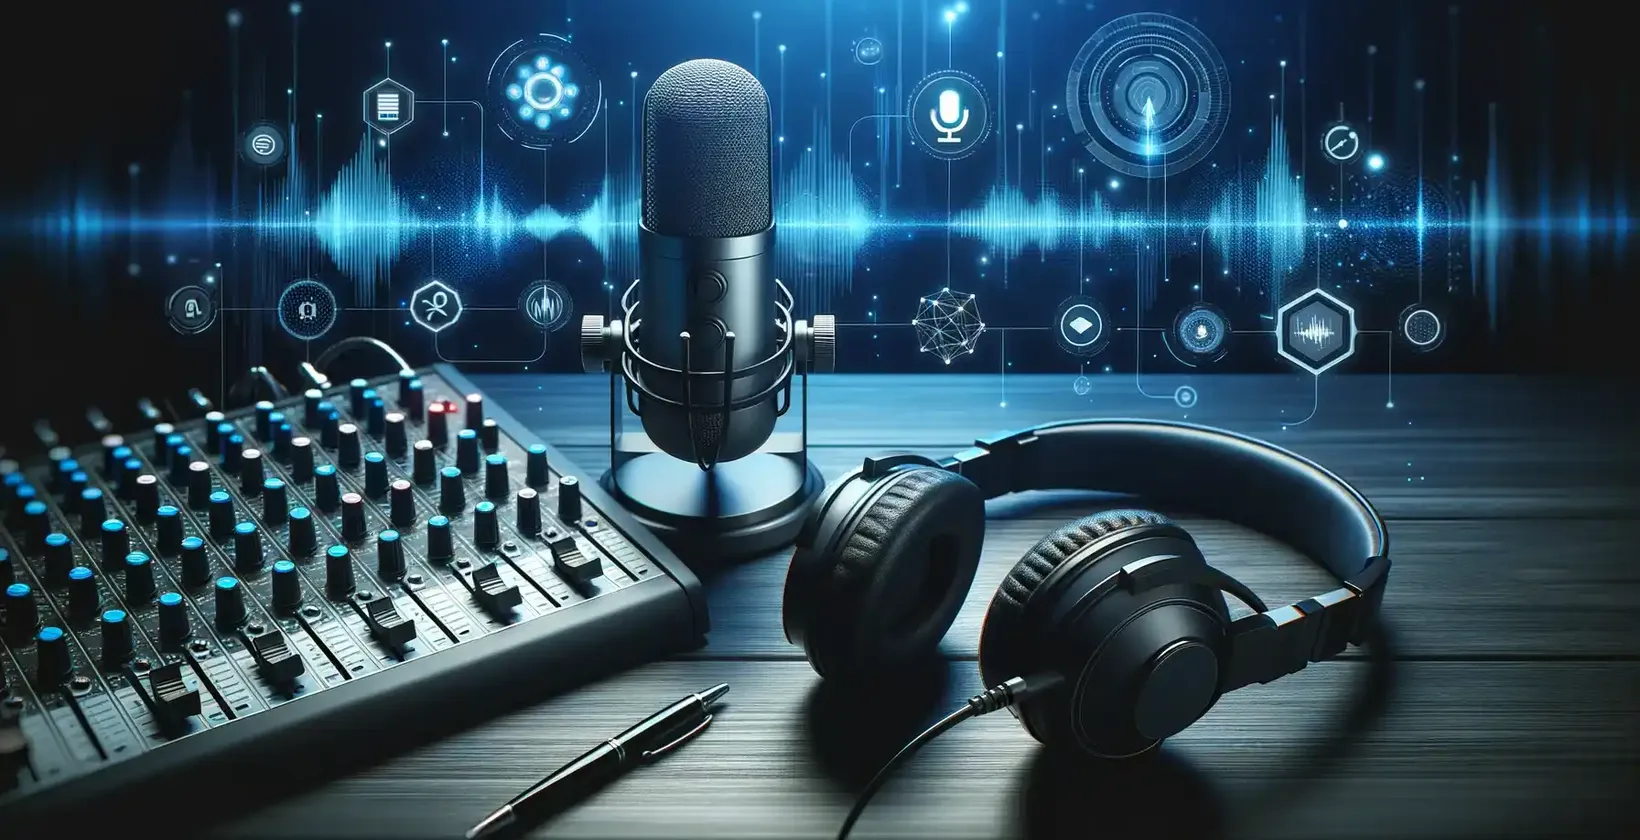 Podcastene er tilgjengelige med studioutstyr, inkludert mikrofon, hodetelefoner og en skjerm som viser lydkurver.